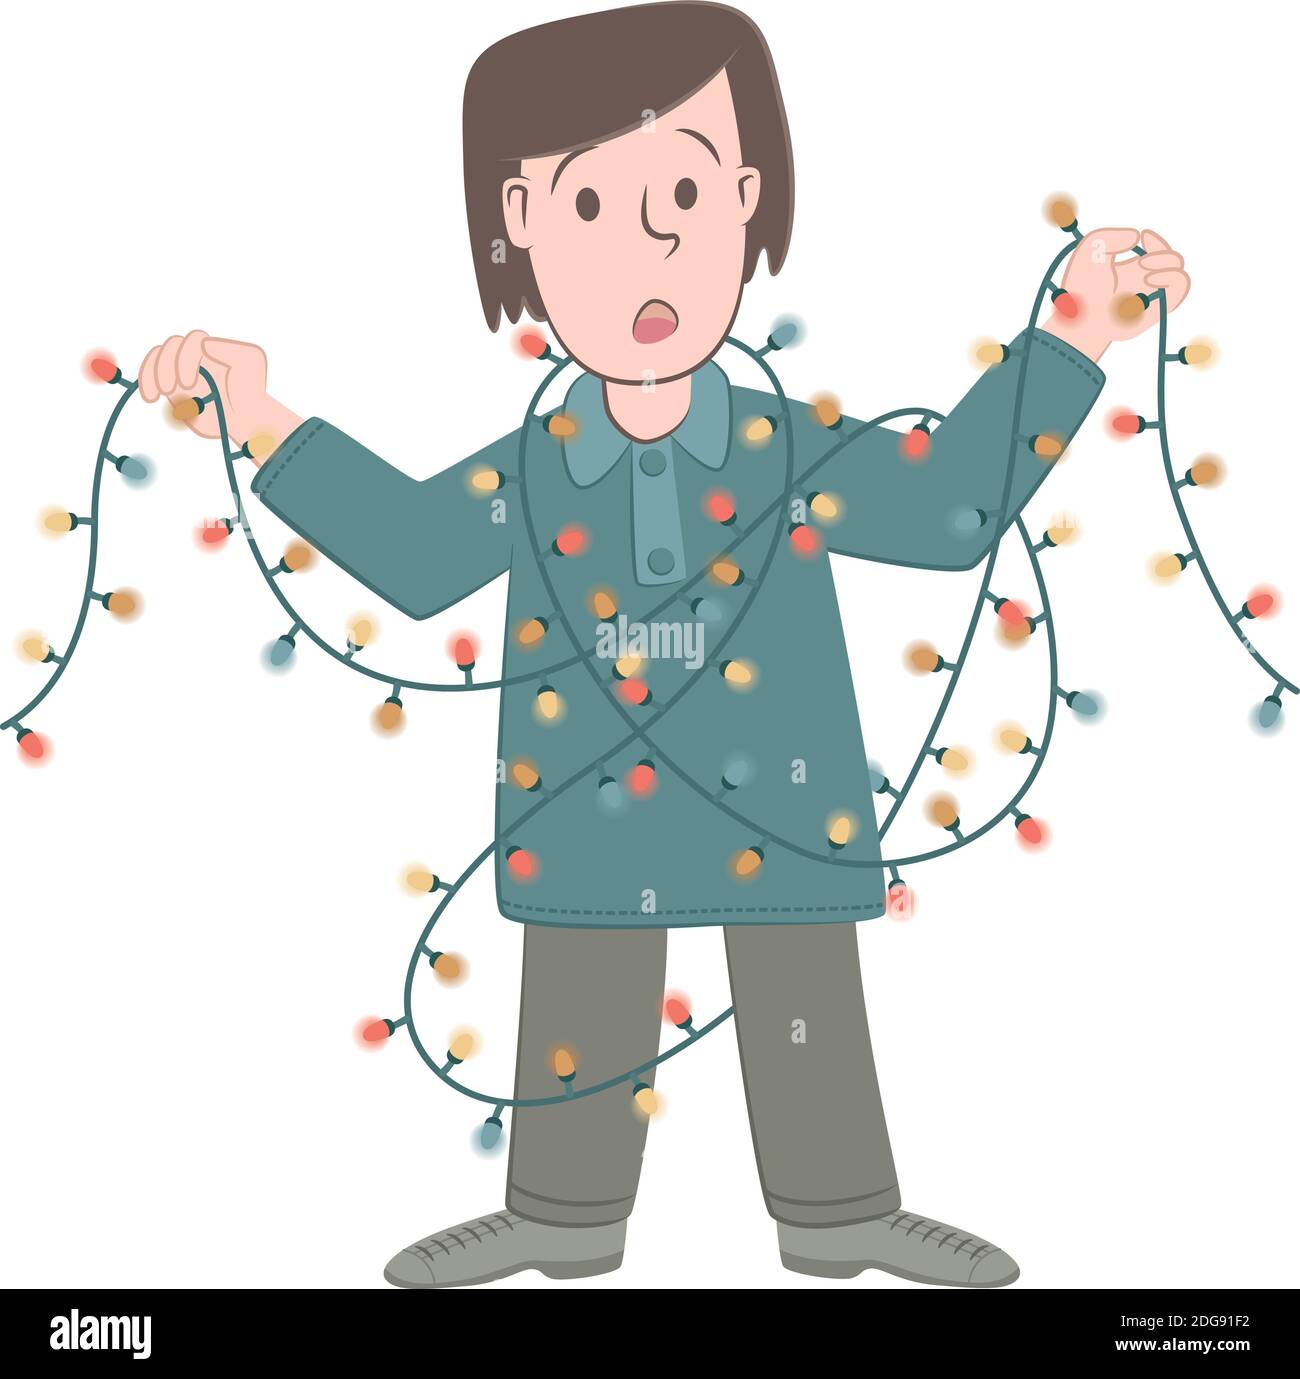 Ilustración de estilo retro de un niño que se ha enredado con luces navideñas. Ilustración del Vector